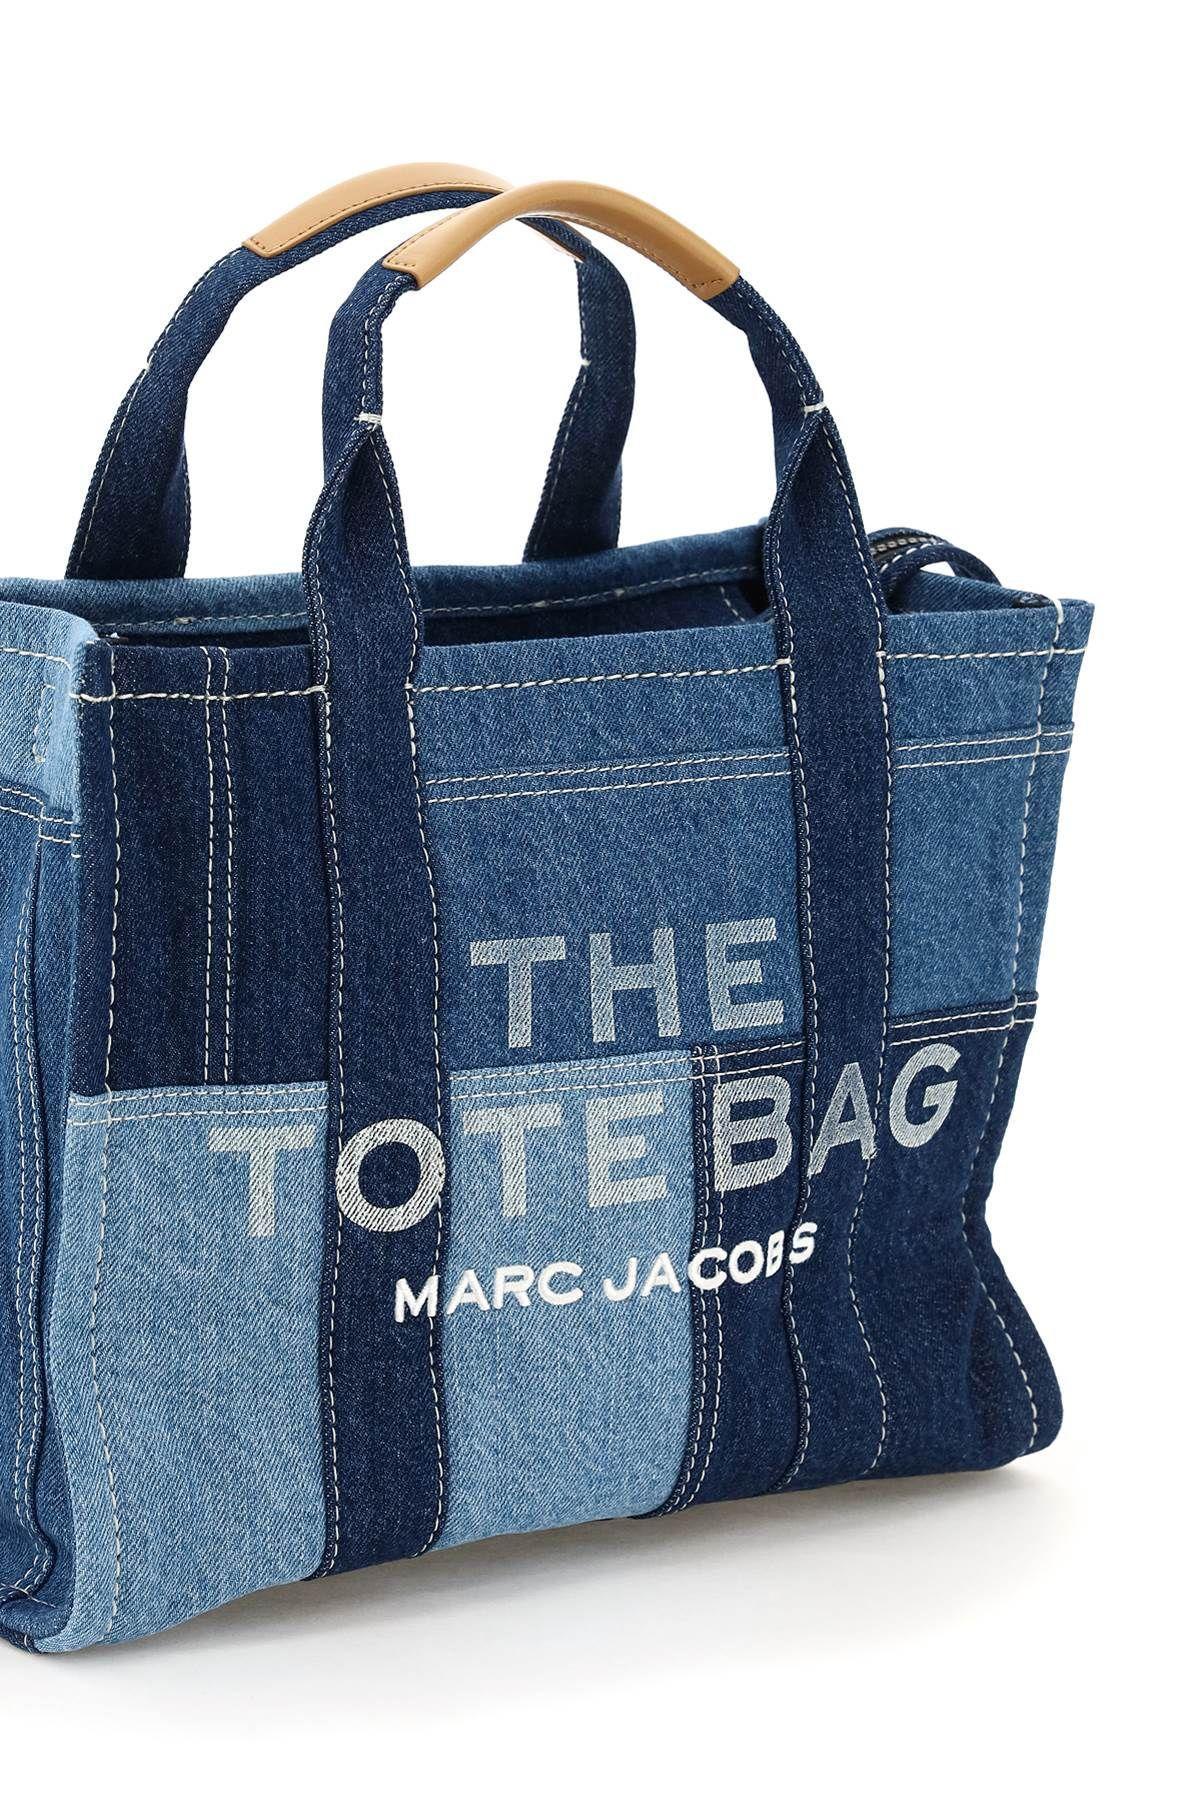 Marc Jacobs The Denim Tote Bag Medium Black Denim in Cotton - US